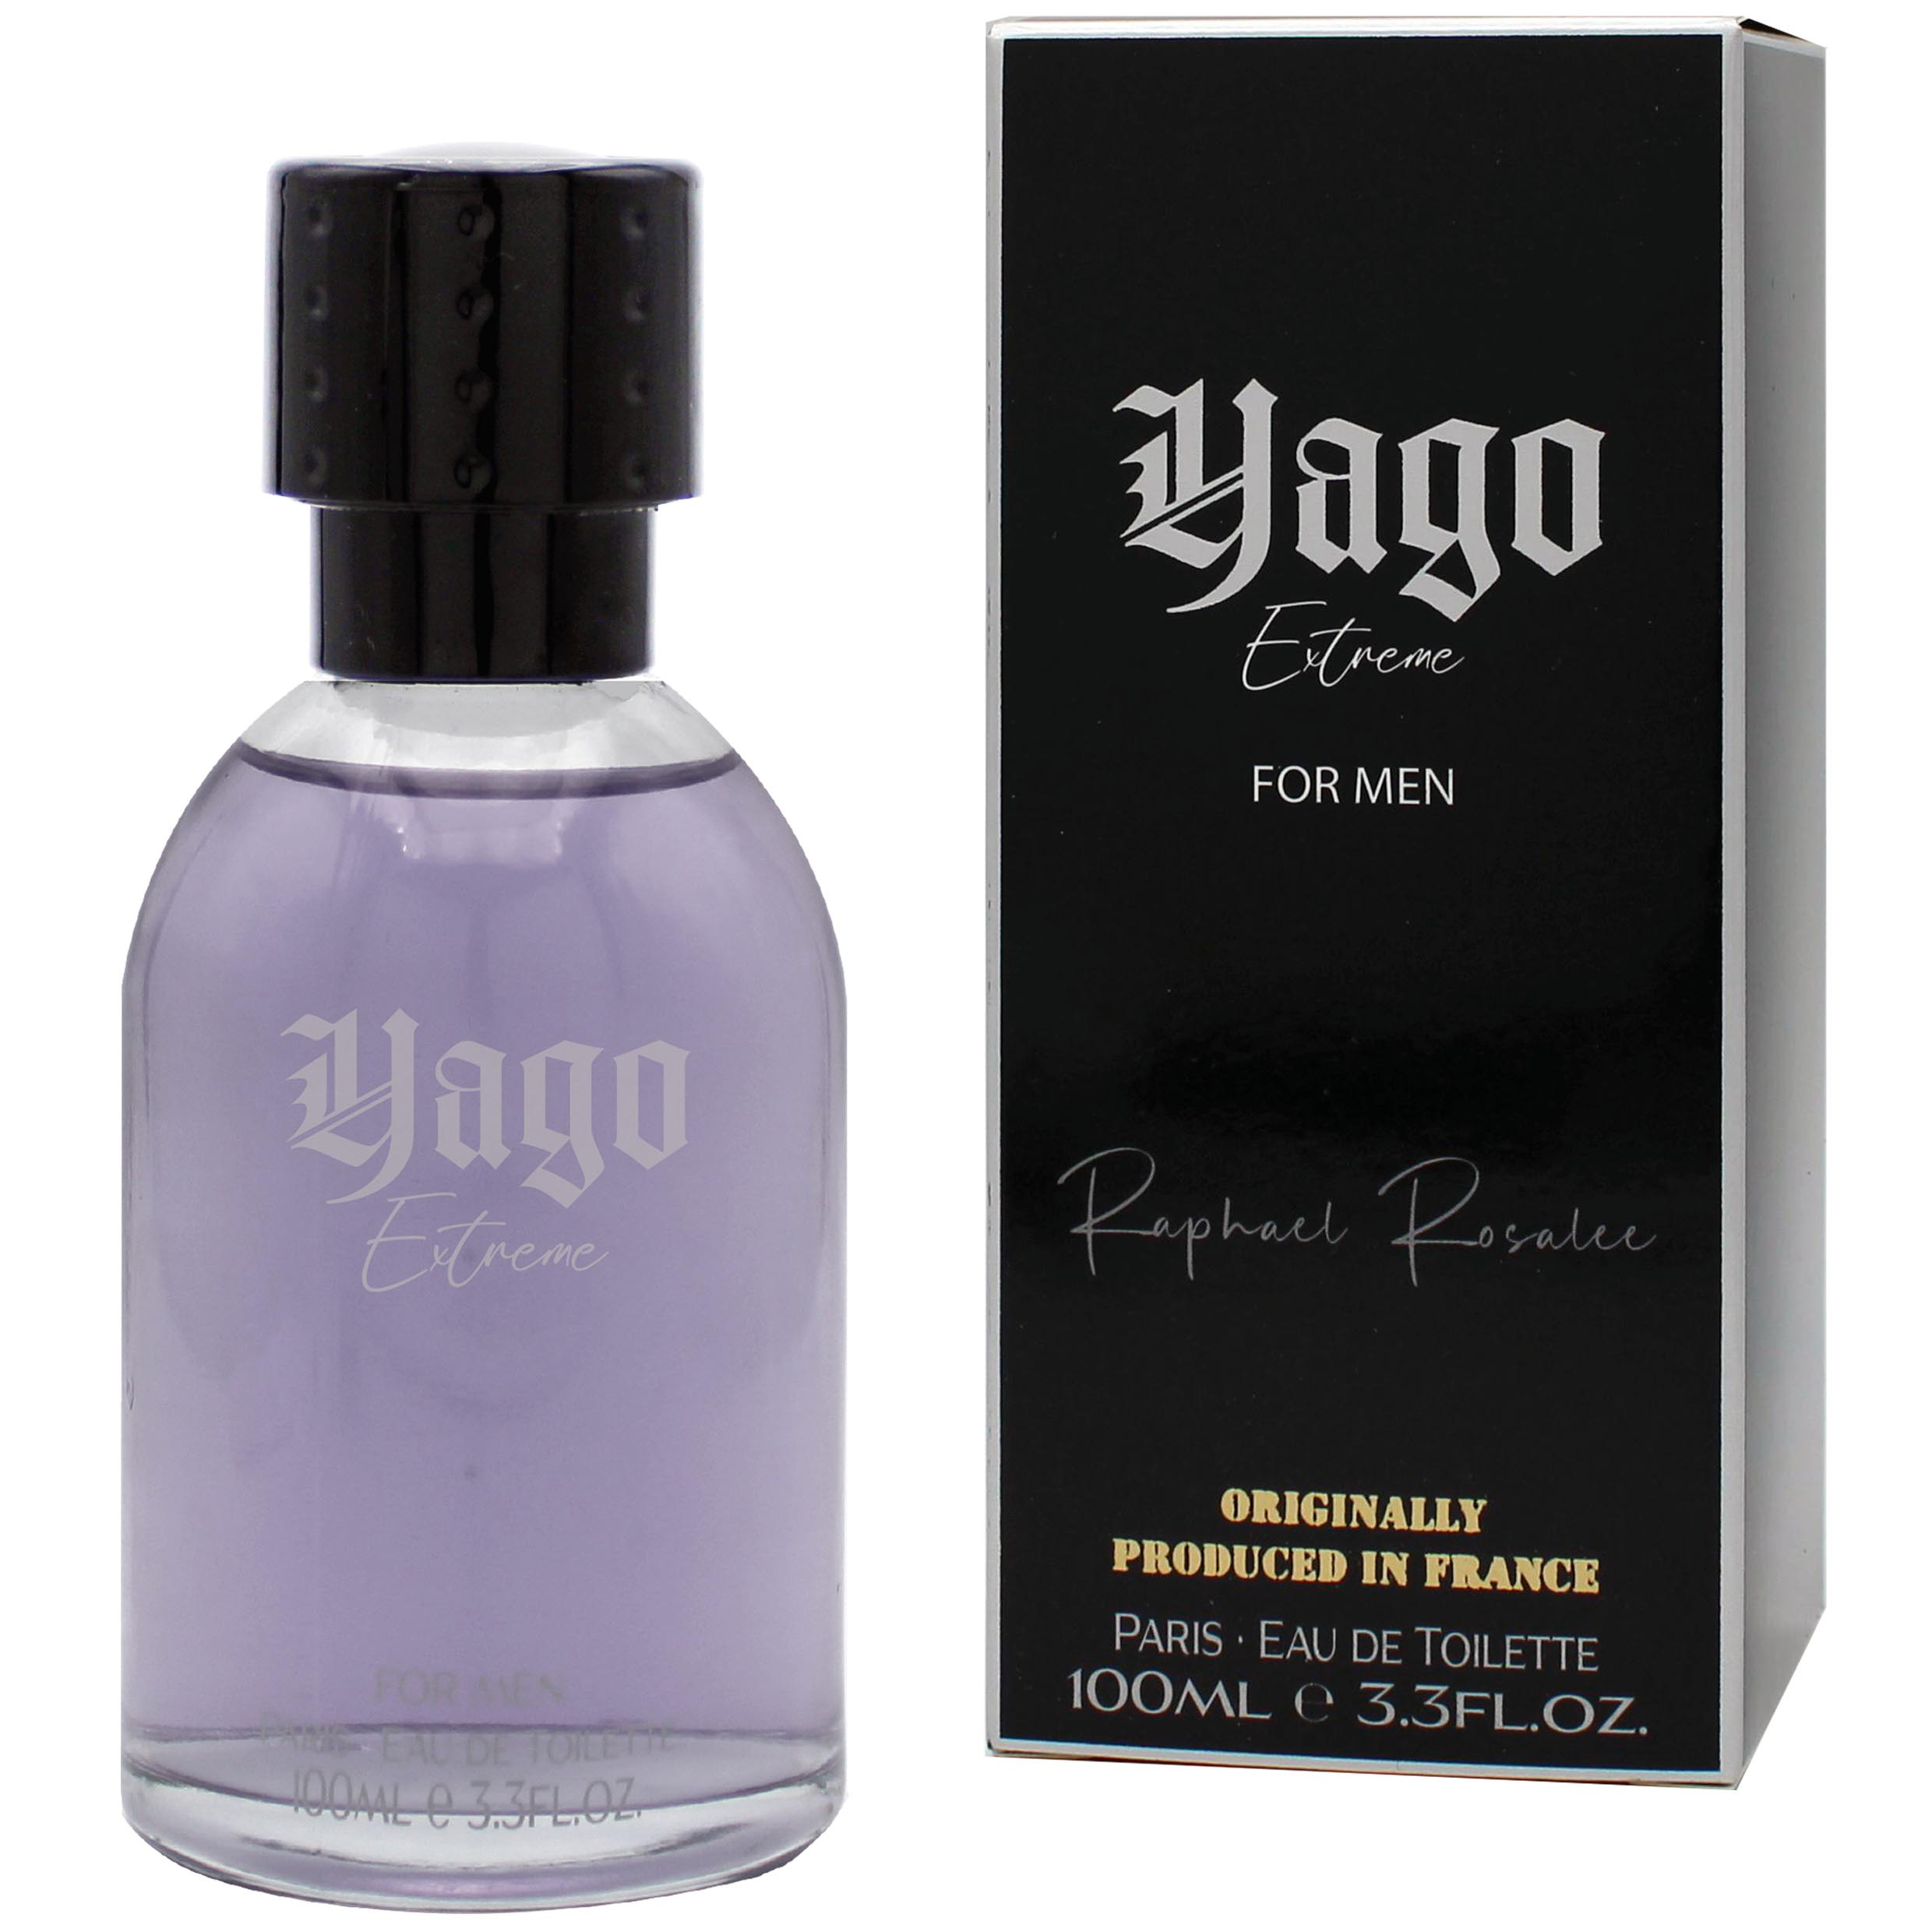     Raphael Rosalee Cosmetics Yago Extreme homme/men Eau de Toilette 100ml Les exclusifs Parfum aus der Collection Privee - Made in France